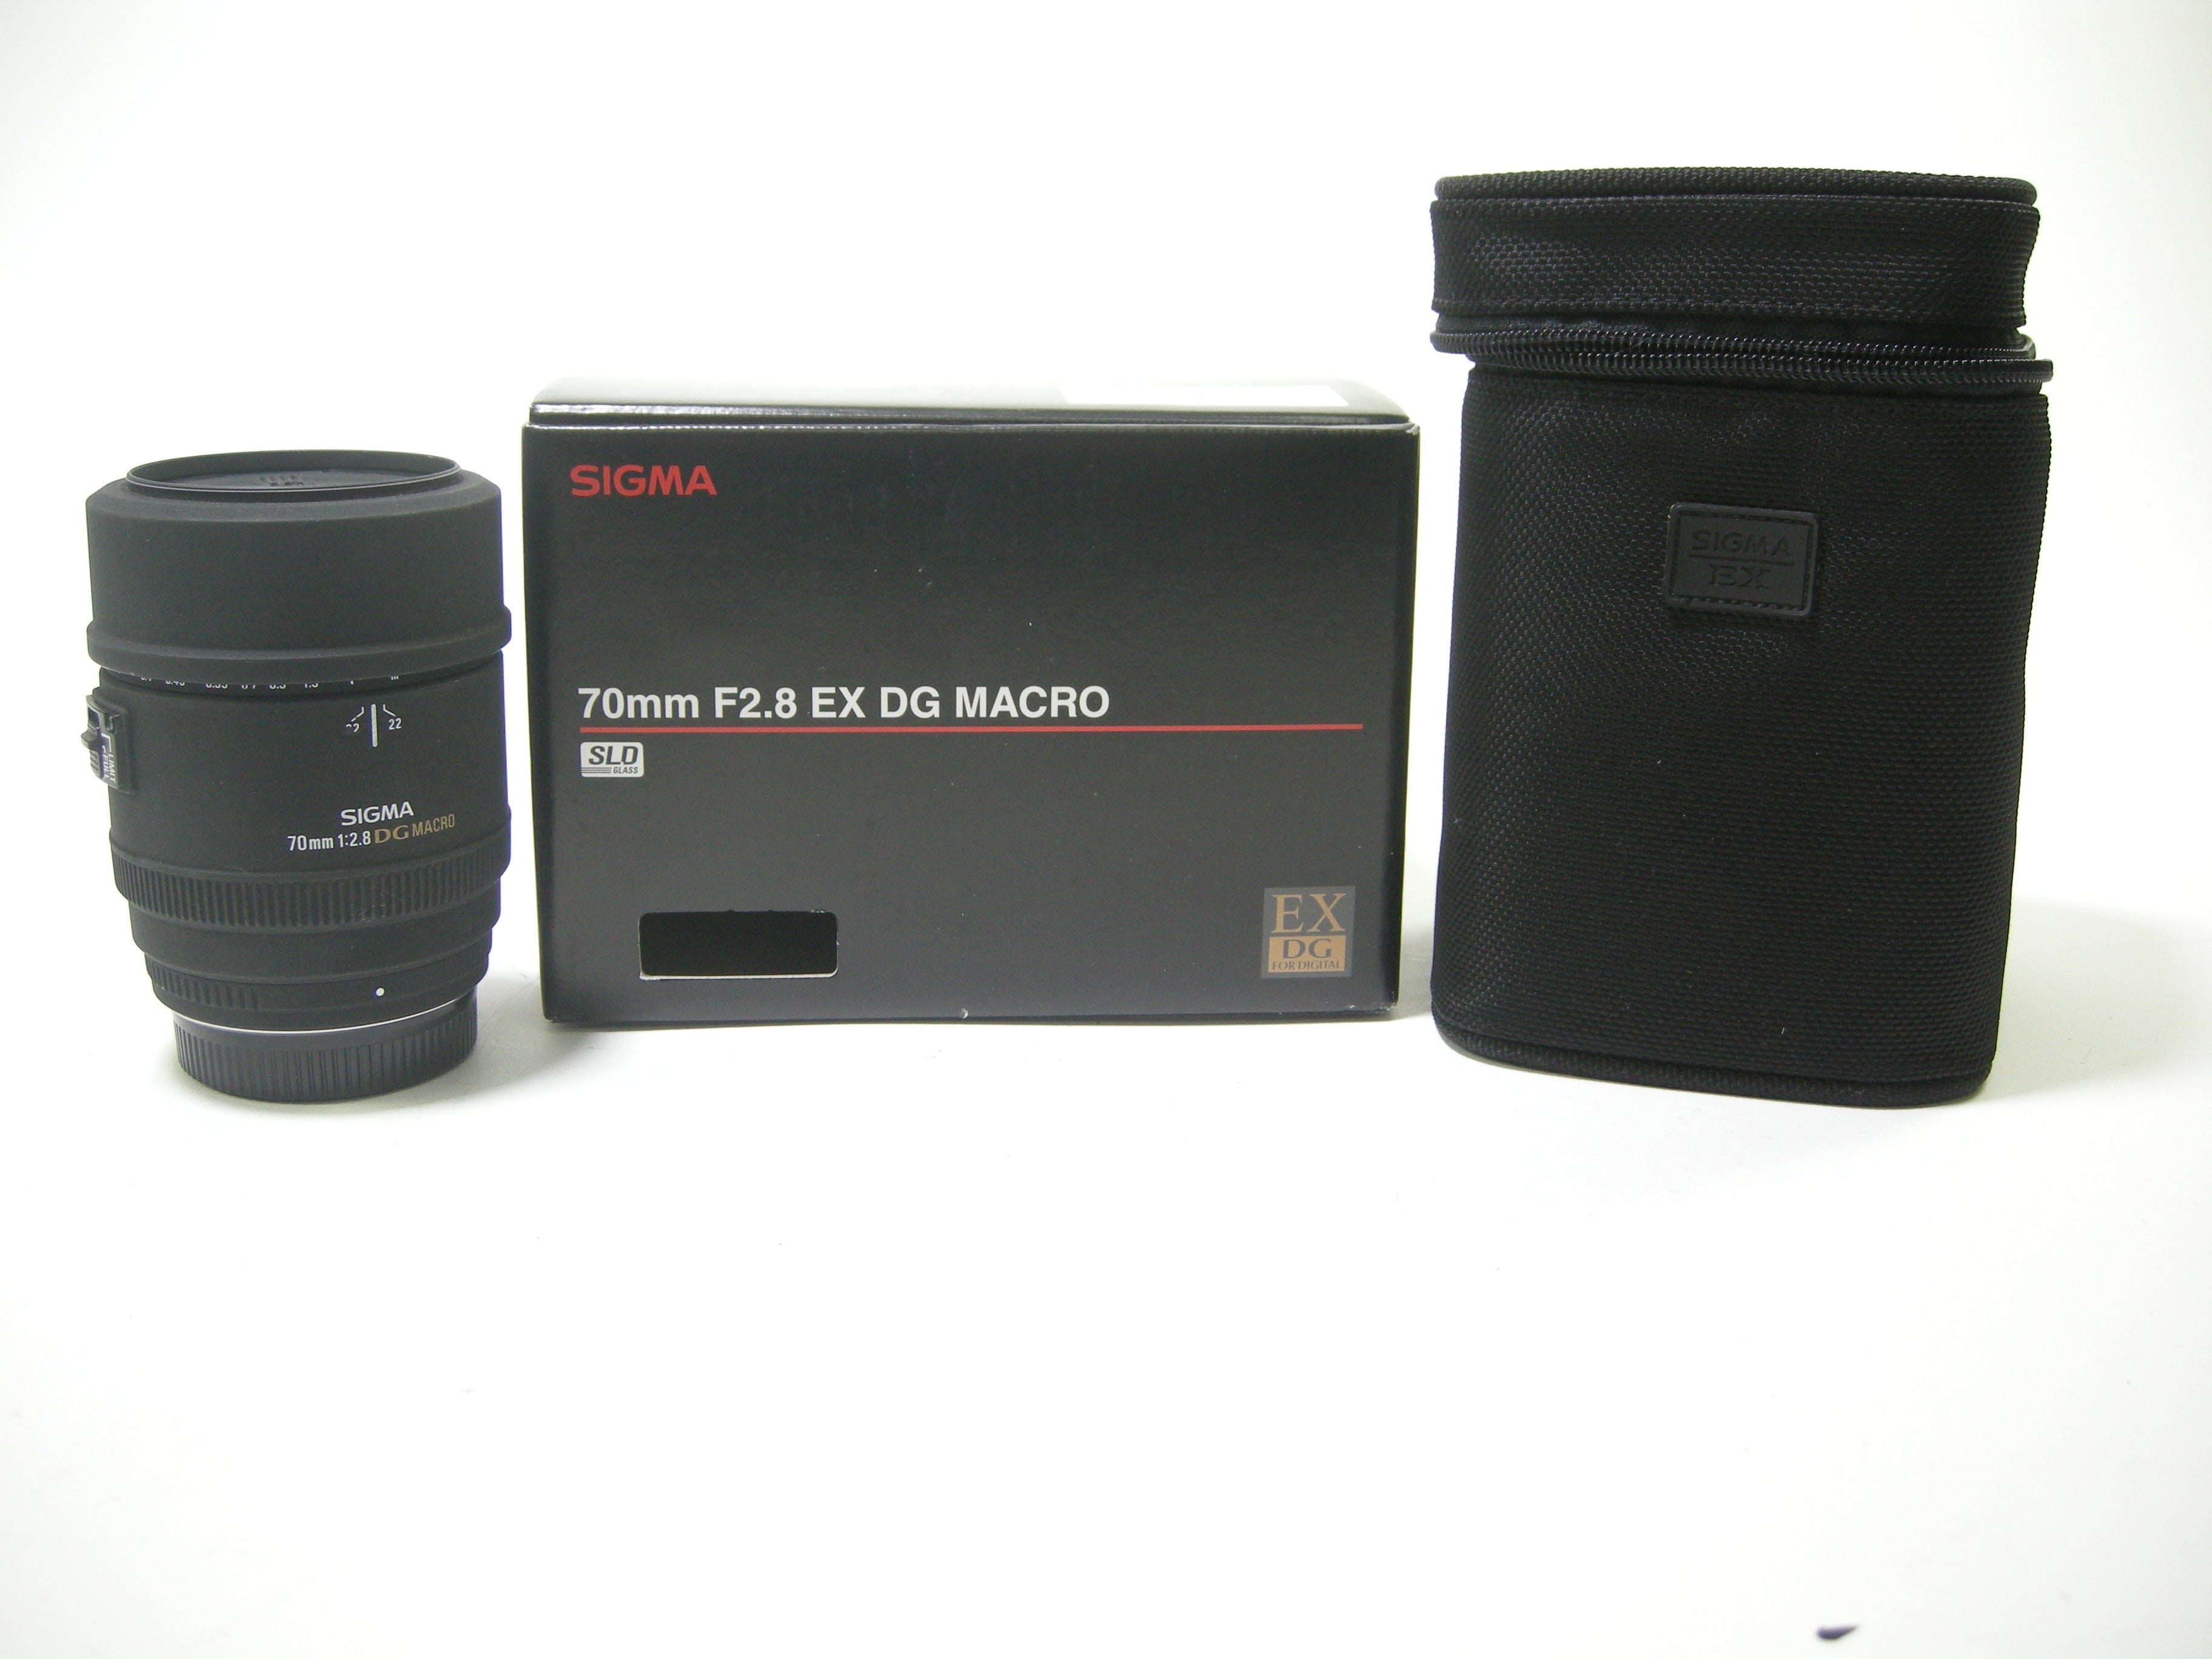 Sigma DG Macro 70mm F2.8 Pentax K mt.